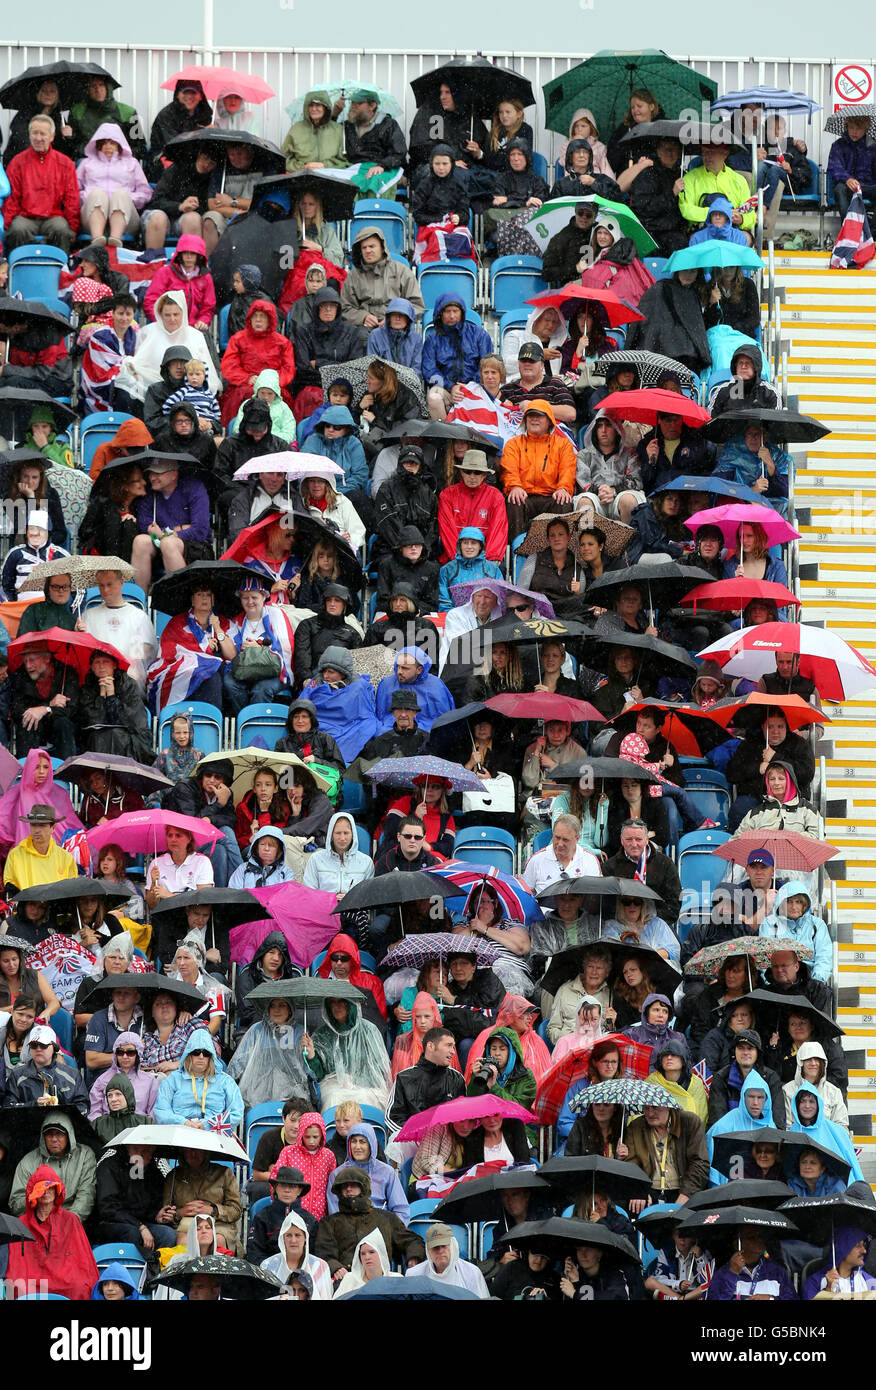 Die Zuschauer schützen sich vor dem Regen, während sie den 2. Qualifikator des Reitsportes Jumping Individual und die Eröffnungsrunde des Team Competition im Greenwich Park, London, während des neunten Tages der Olympischen Spiele 2012 in London beobachten. Stockfoto